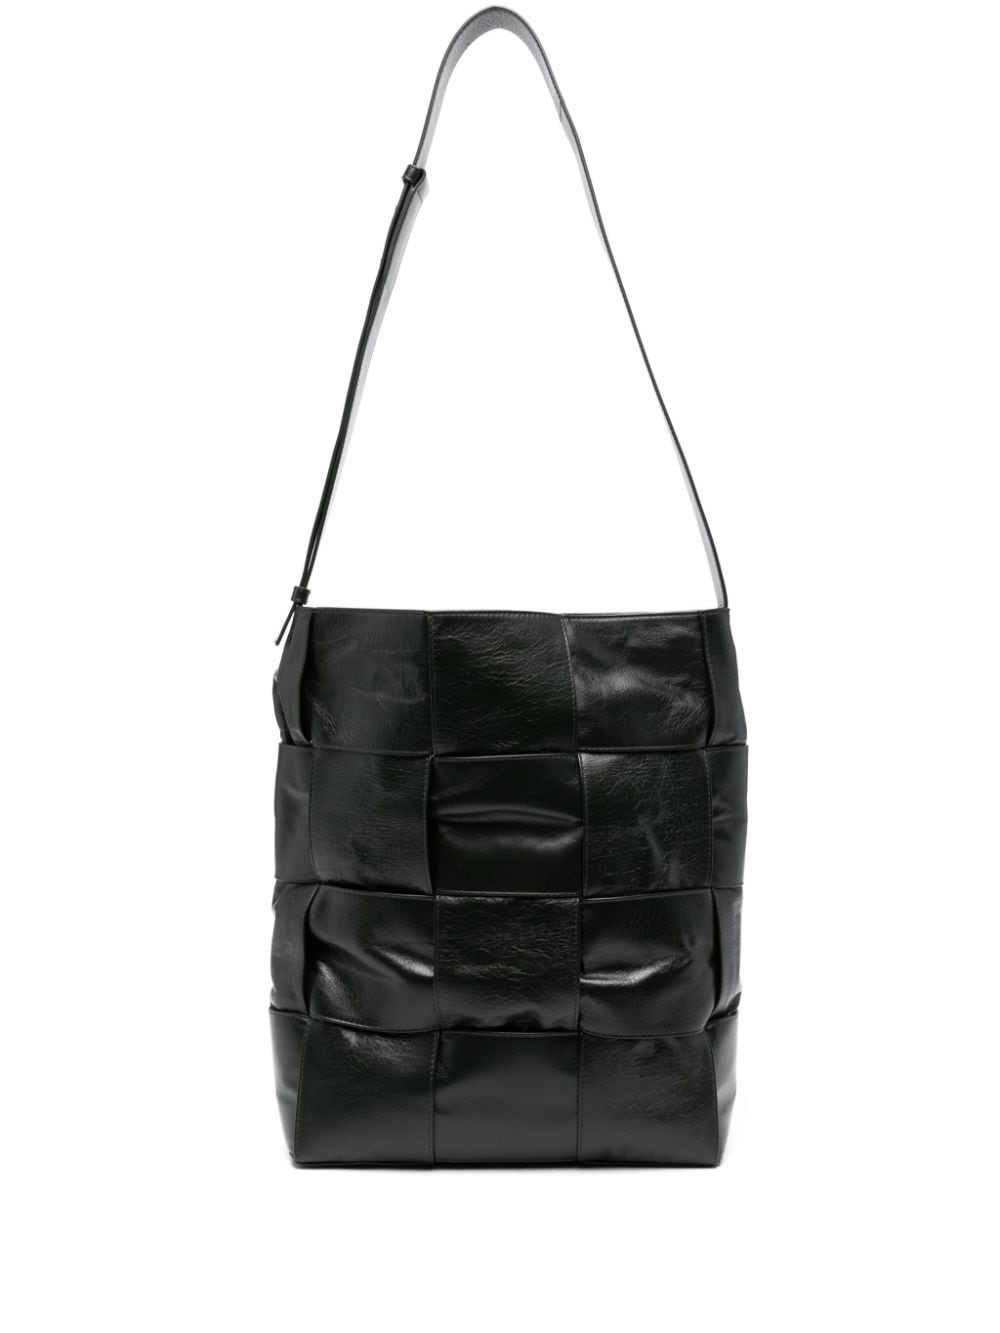 Arco leather shoulder bag